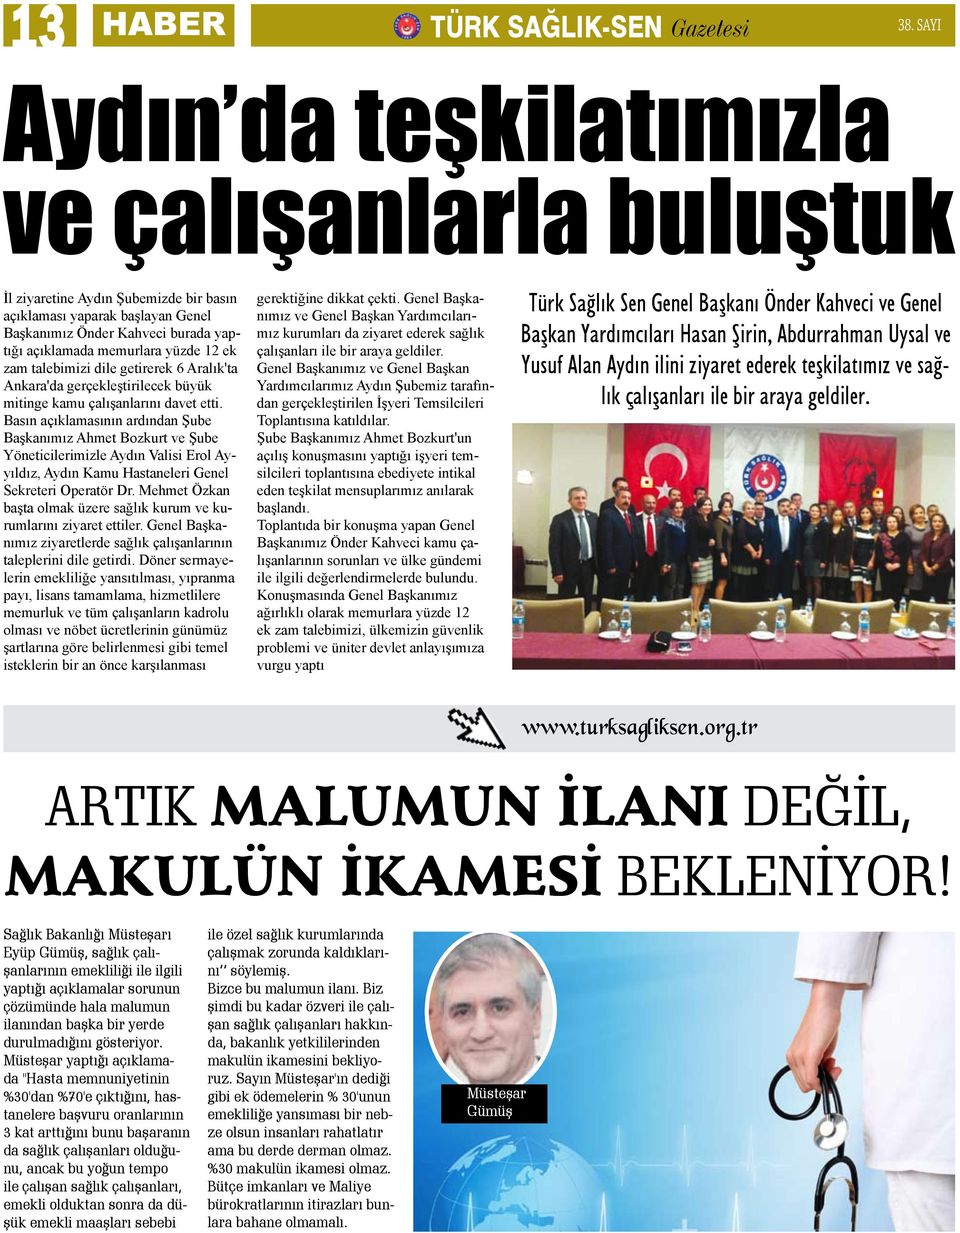 ek zam talebimizi dile getirerek 6 Aralık'ta Ankara'da gerçekleştirilecek büyük mitinge kamu çalışanlarını davet etti.